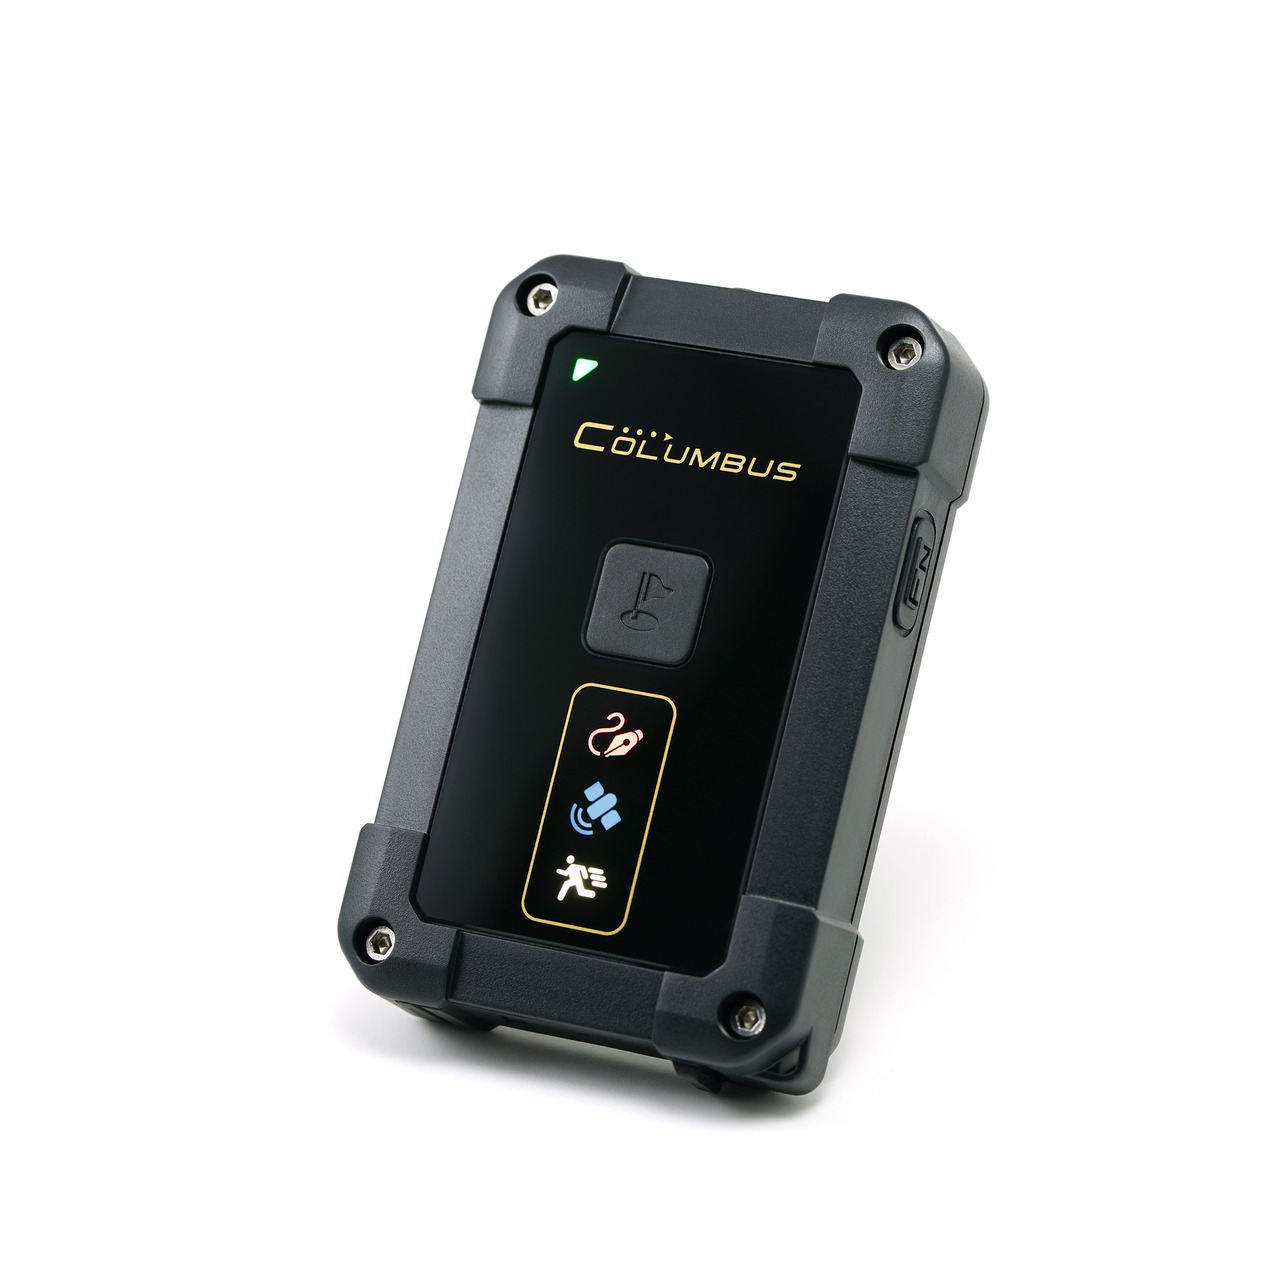 Columbus GNSS-Datenlogger P-10 Pro- Dual-Frequenzband- GPS- GALILEO- GLONASS- 50 h Betrieb unter Freizeit- und Outdoortechnik